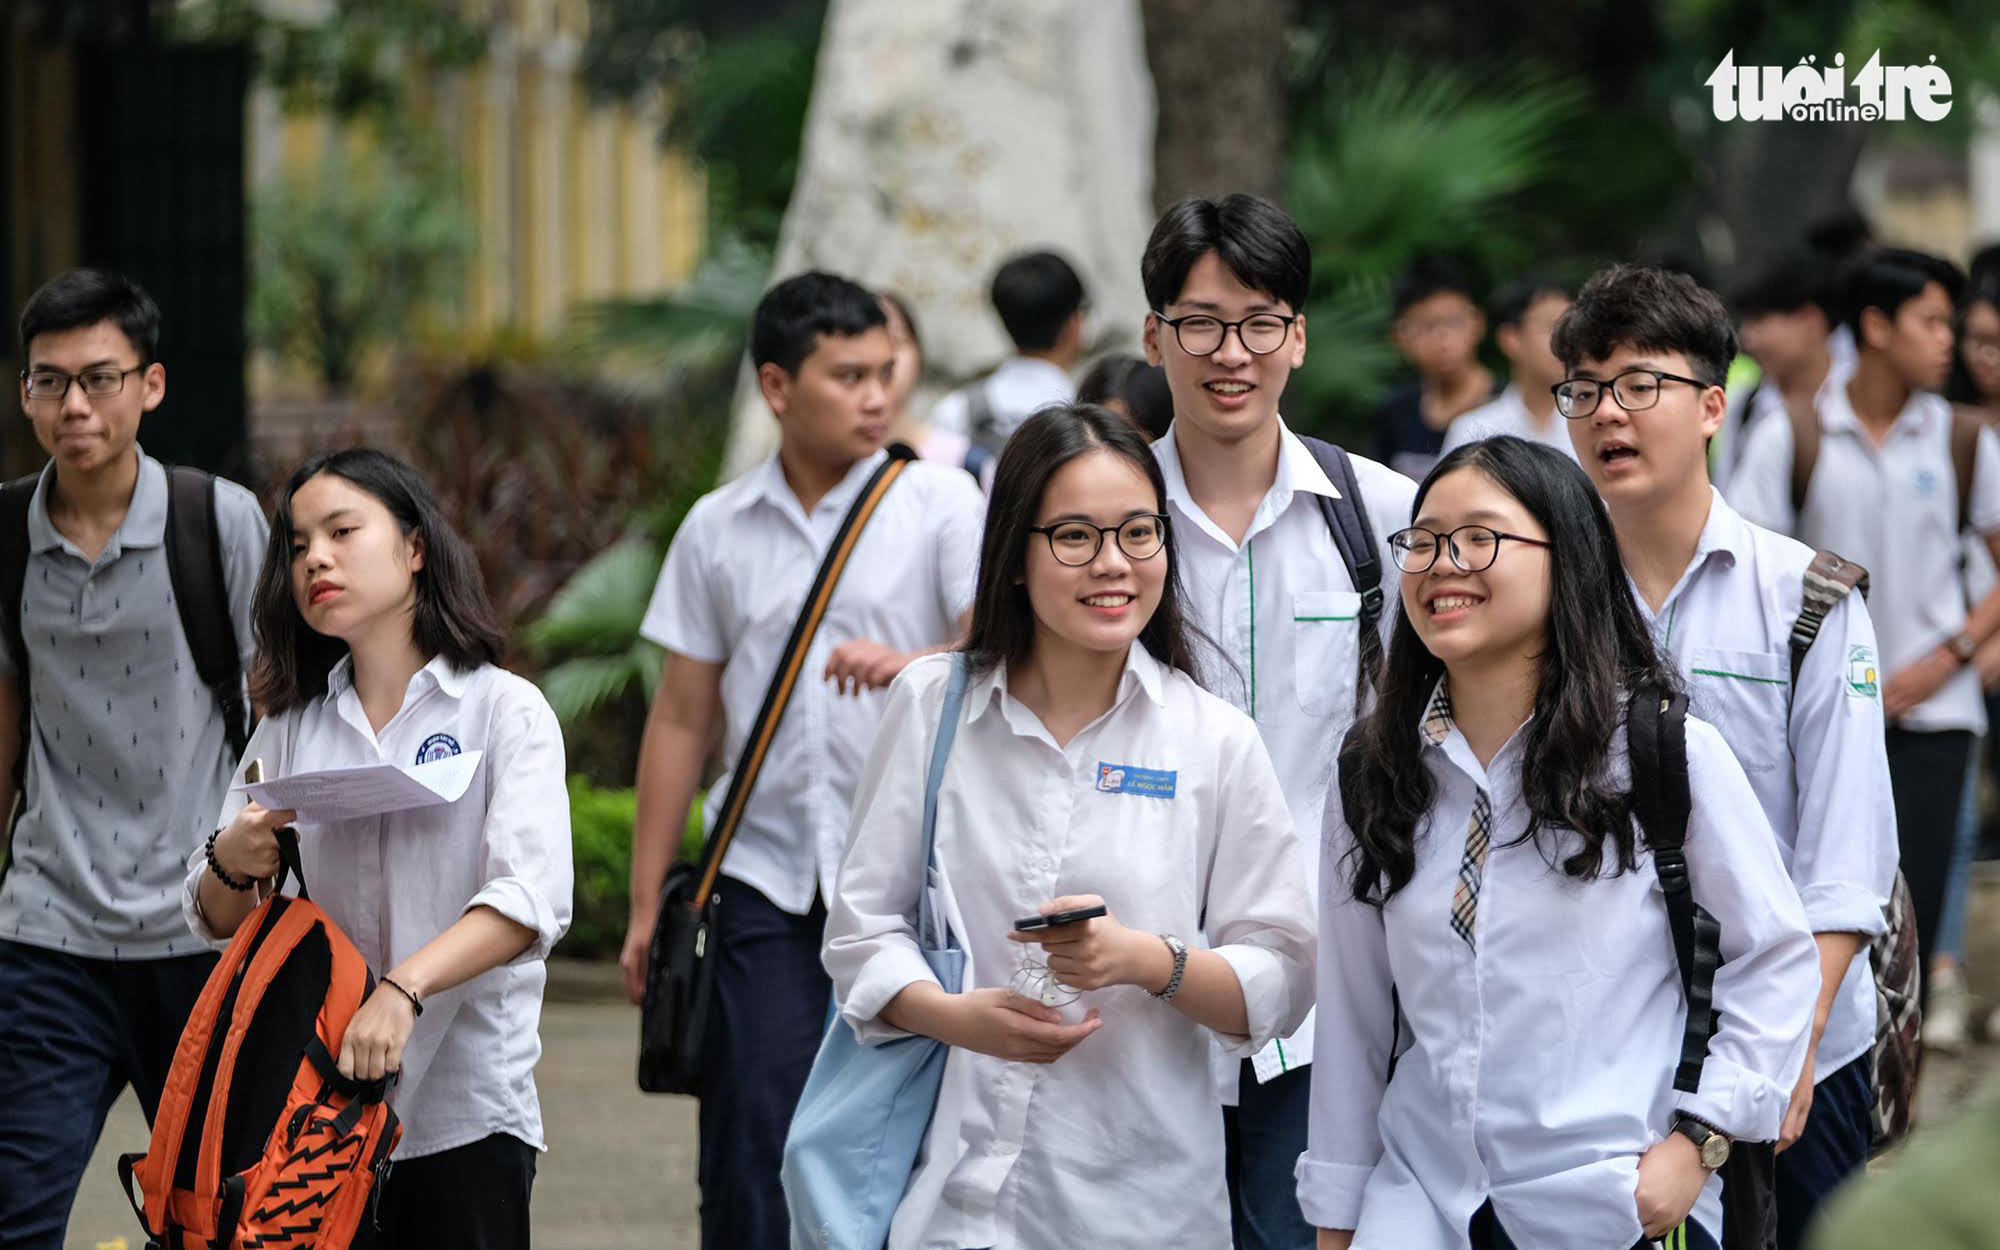 Tuyển sinh lớp 10 ở Hà Nội: Giảm nội dung thi, giảm môn thi - Ảnh 1.